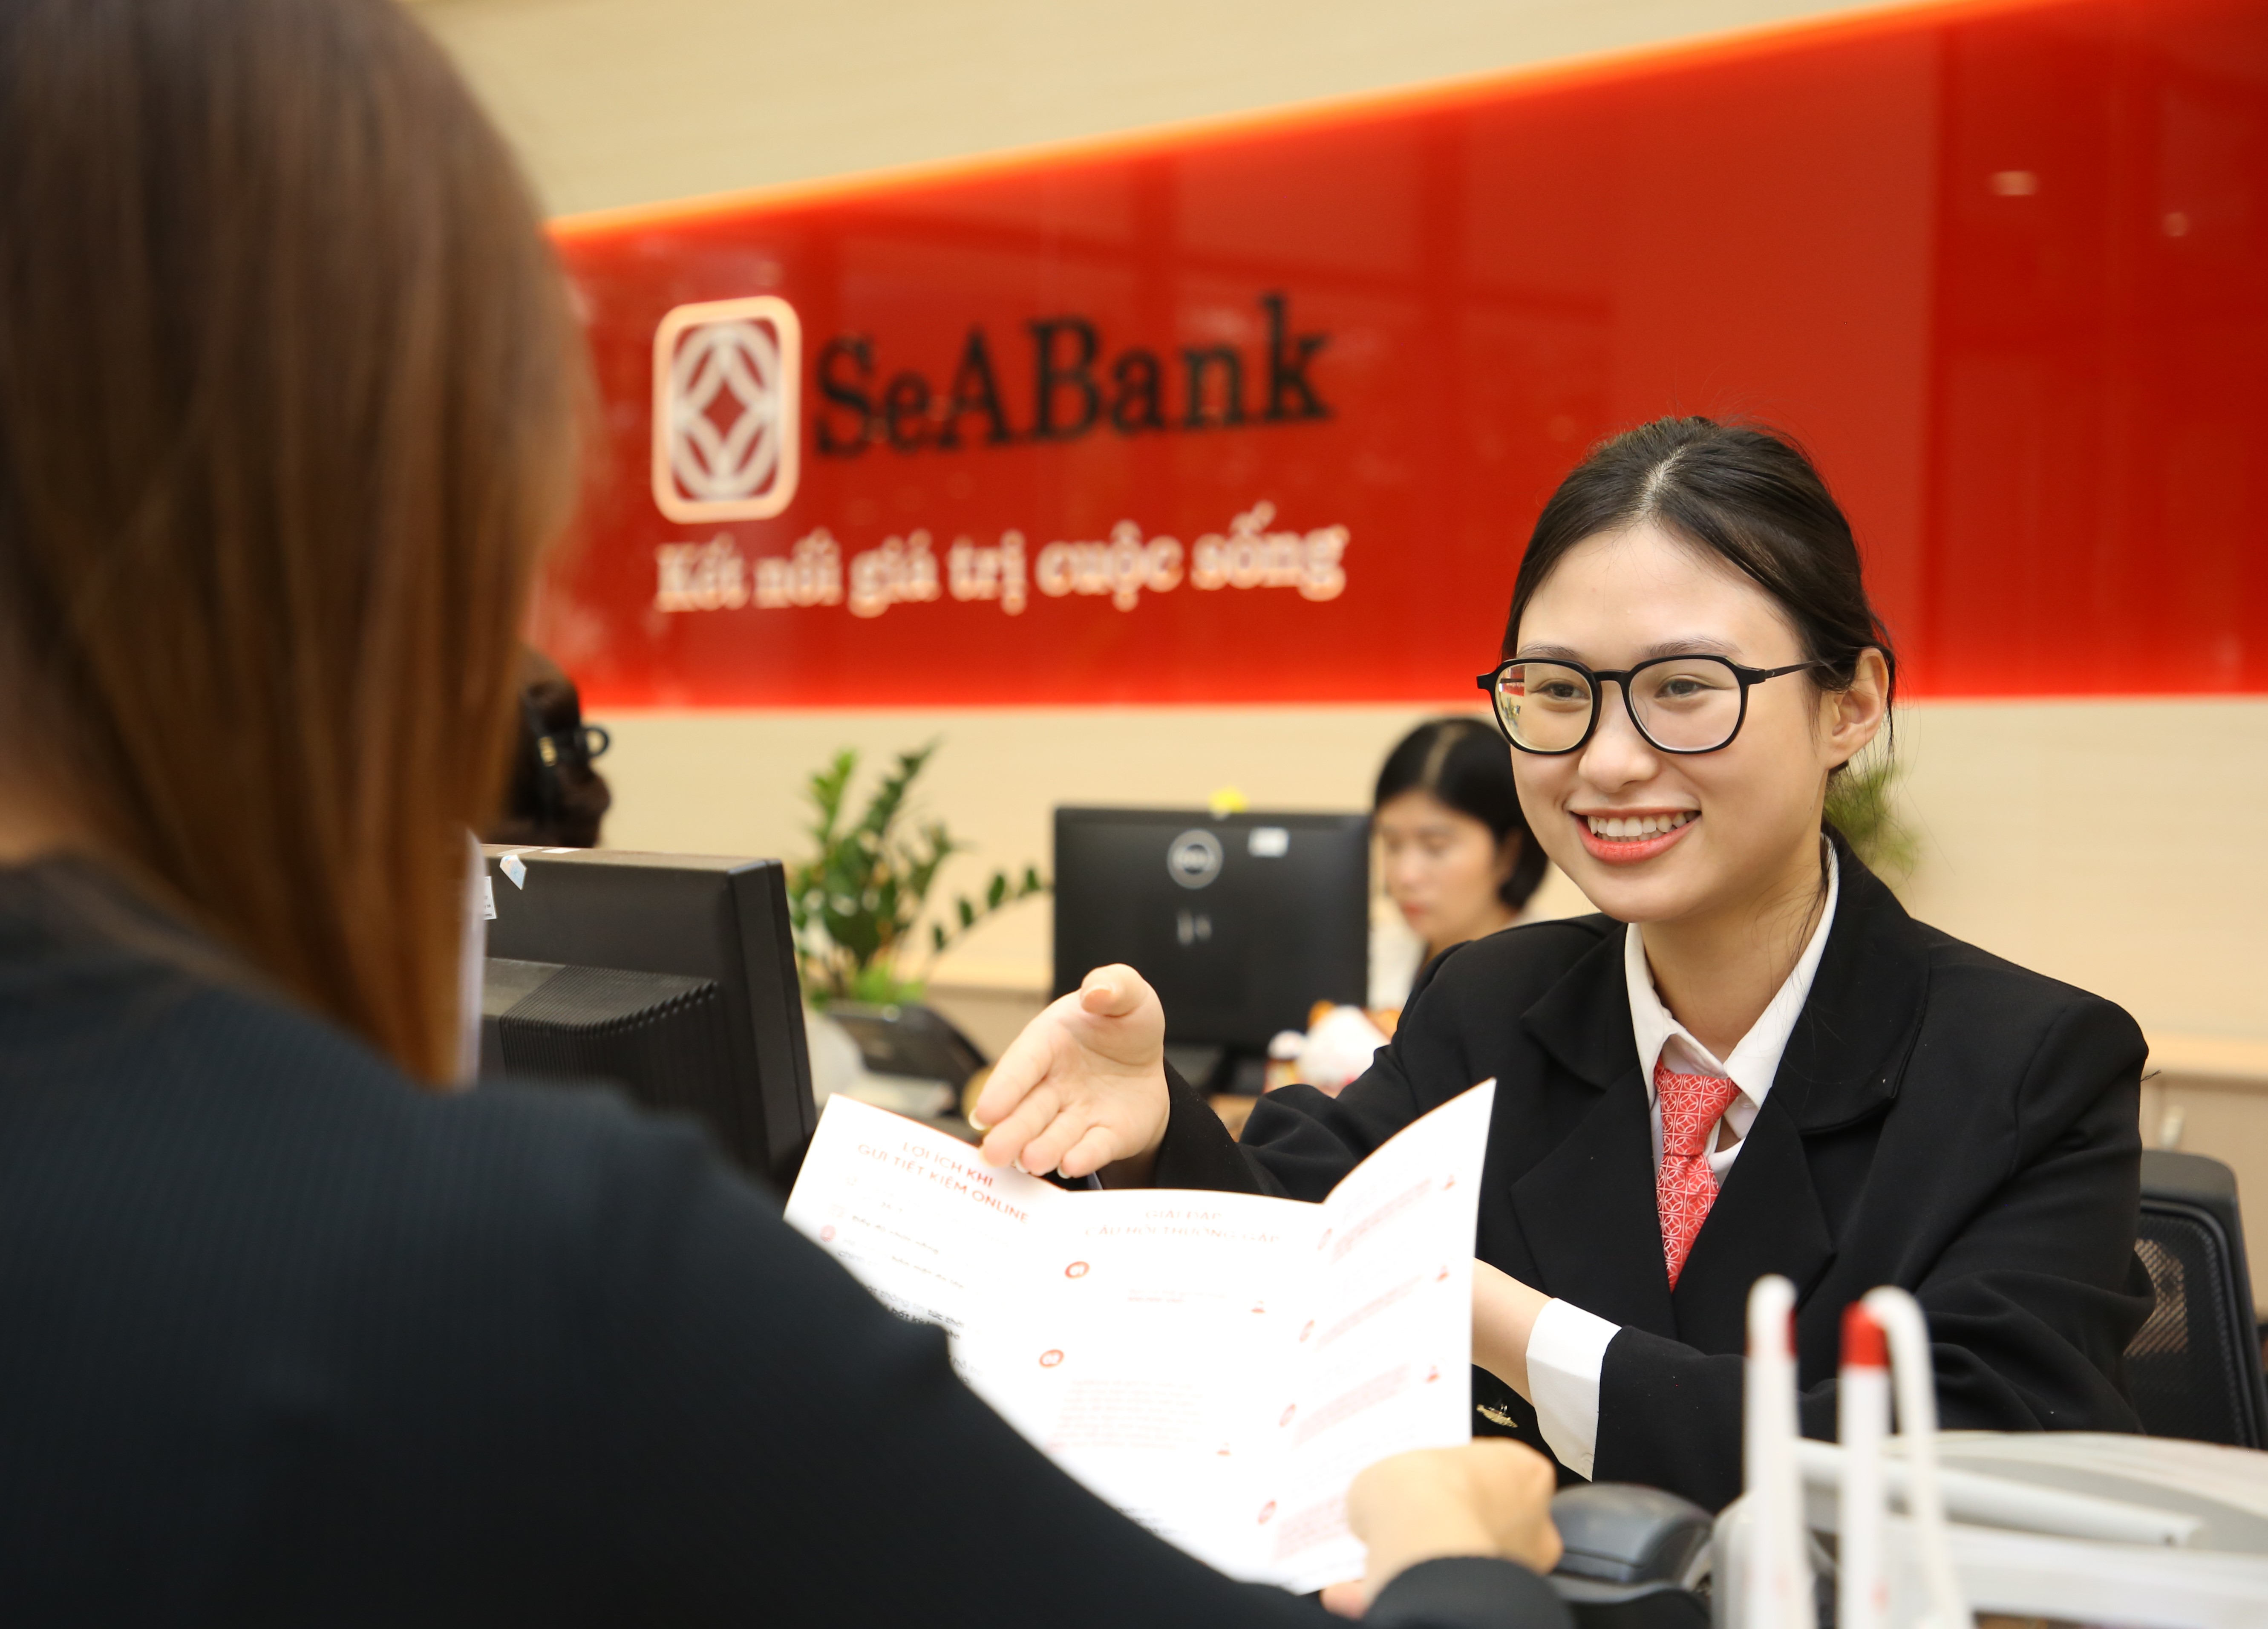 SeABank được Fortune vinh danh trong bảng xếp hạng lần đầu công bố - Fortune Southeast Asia 500